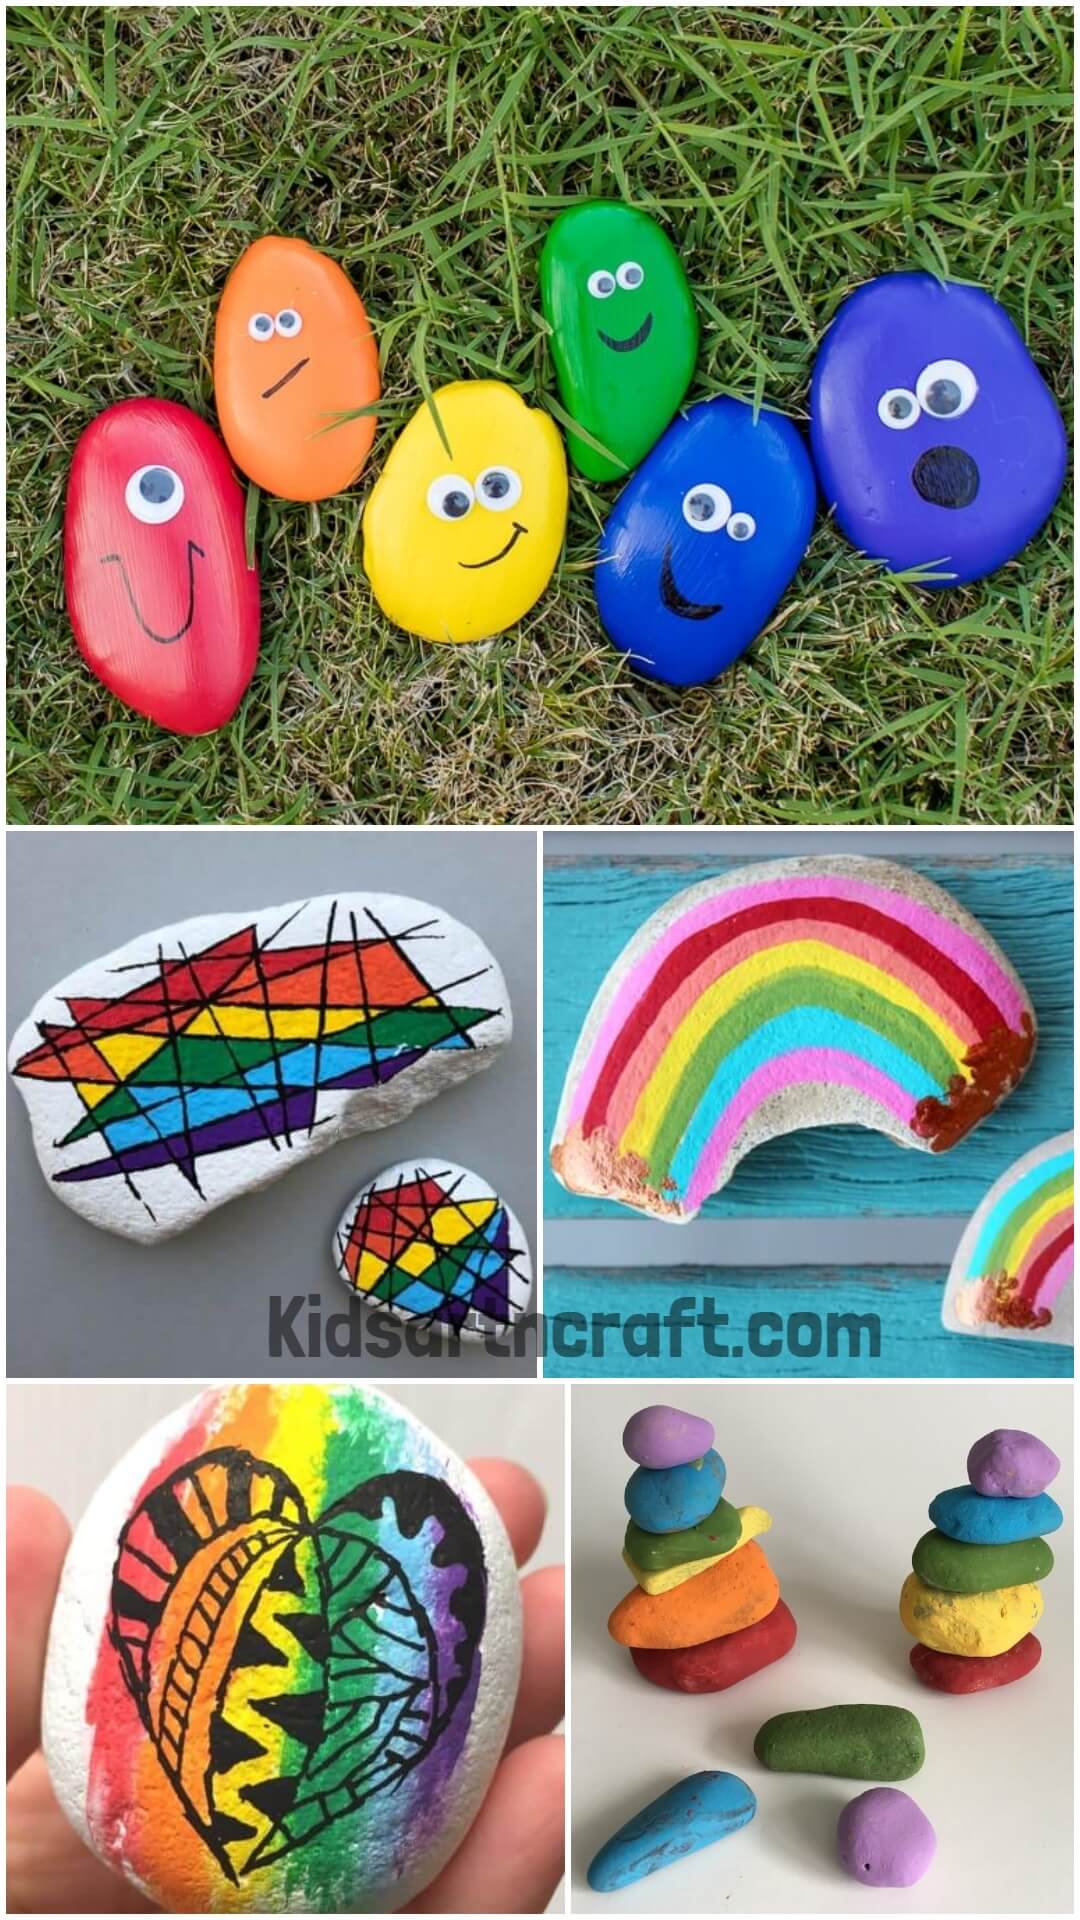 Handmade Rainbow Painted Rock Ideas